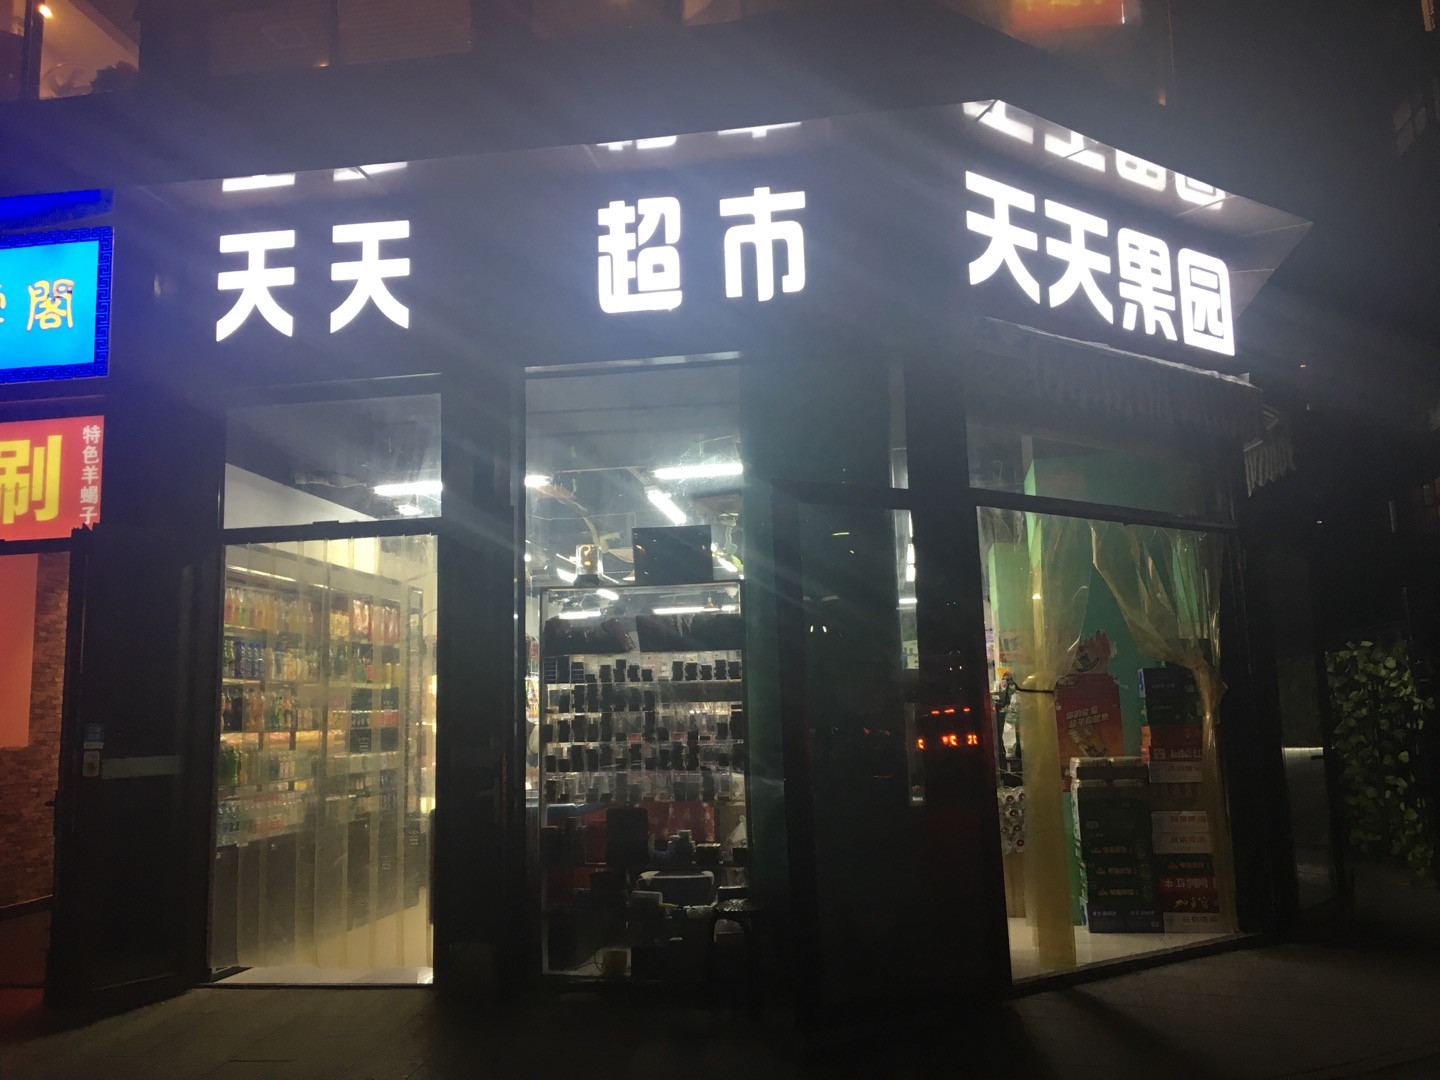           天天超市(永兴路店)